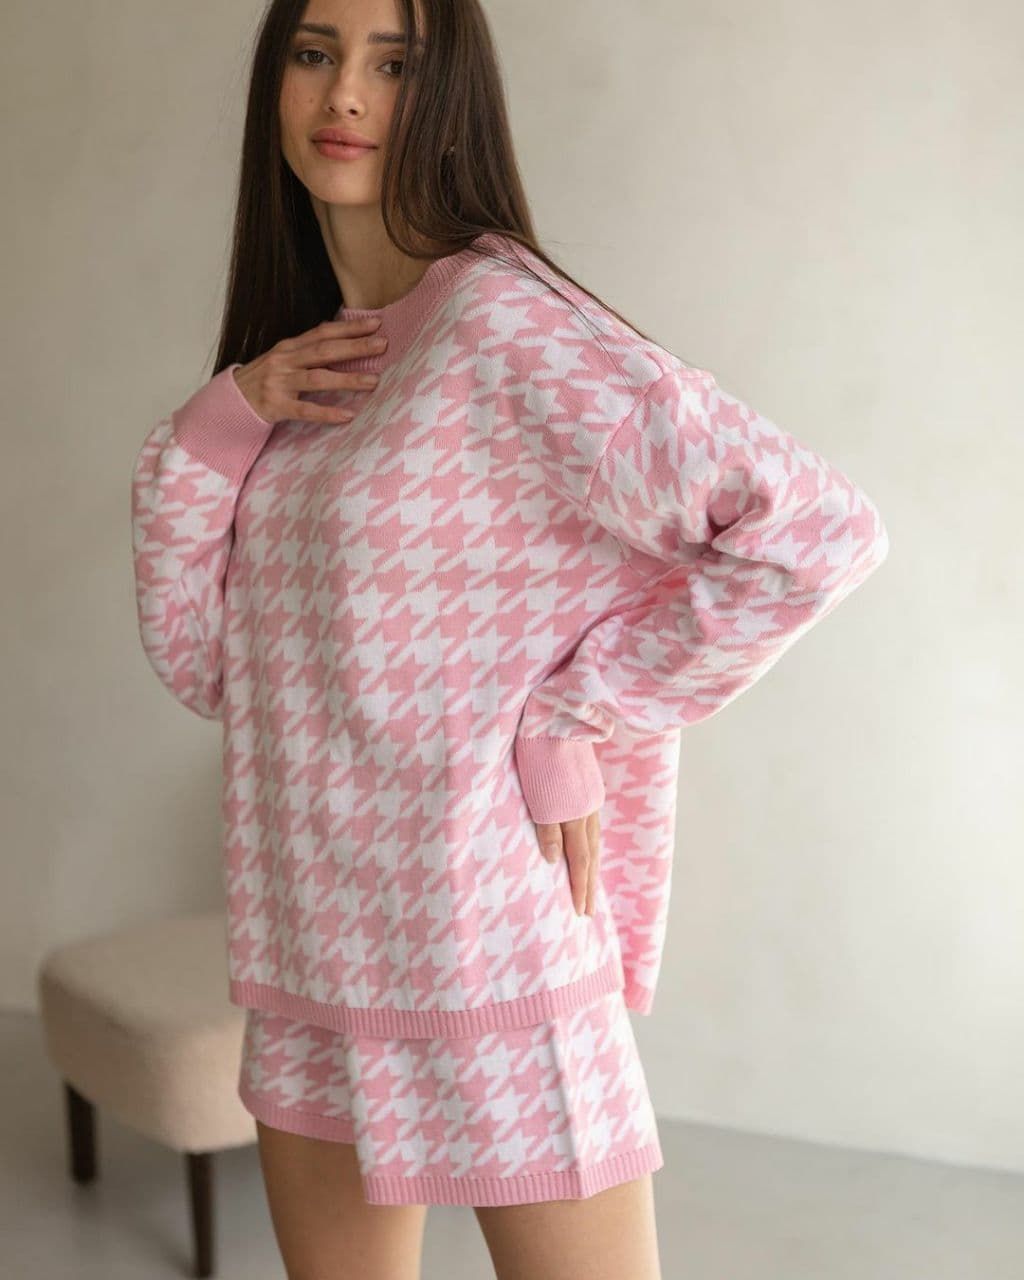 Стильныий вязанный костюм в гусиную лапку джемпер+шорты, Розовый, универсальный (S-L)